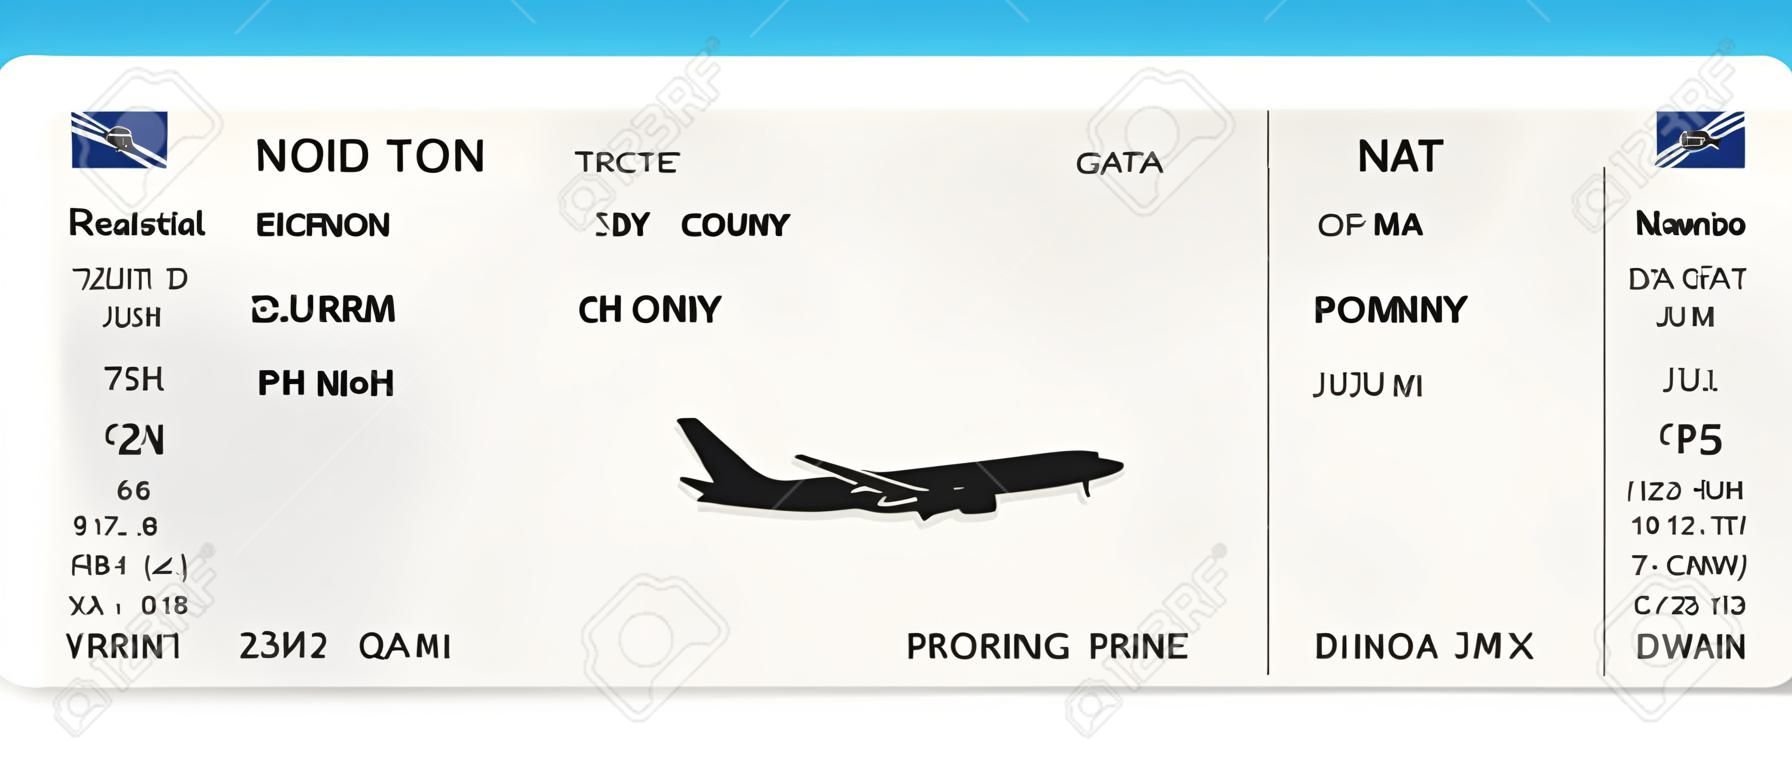 Blaues realistisches Flugticket- oder Bordkartendesign mit unwirklicher Flugzeit und Passagiernamen. Vektorillustration des Musters einer Bordkarte